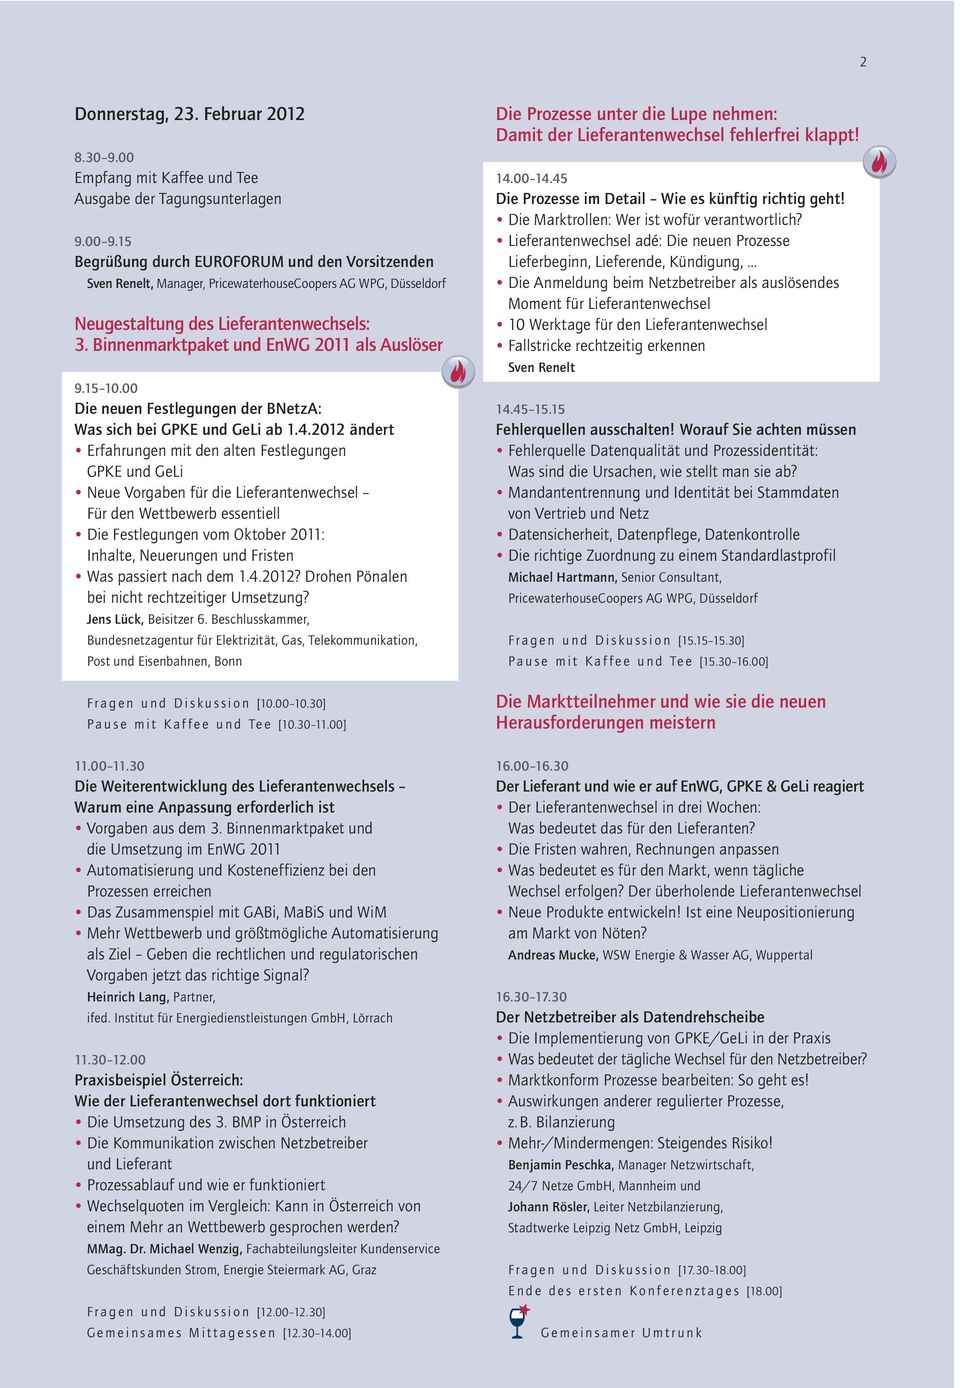 Binnenmarktpaket und EnWG 2011 als Auslöser 9.15 10.00 Die neuen Festlegungen der BNetzA: Was sich bei GPKE und GeLi ab 1.4.